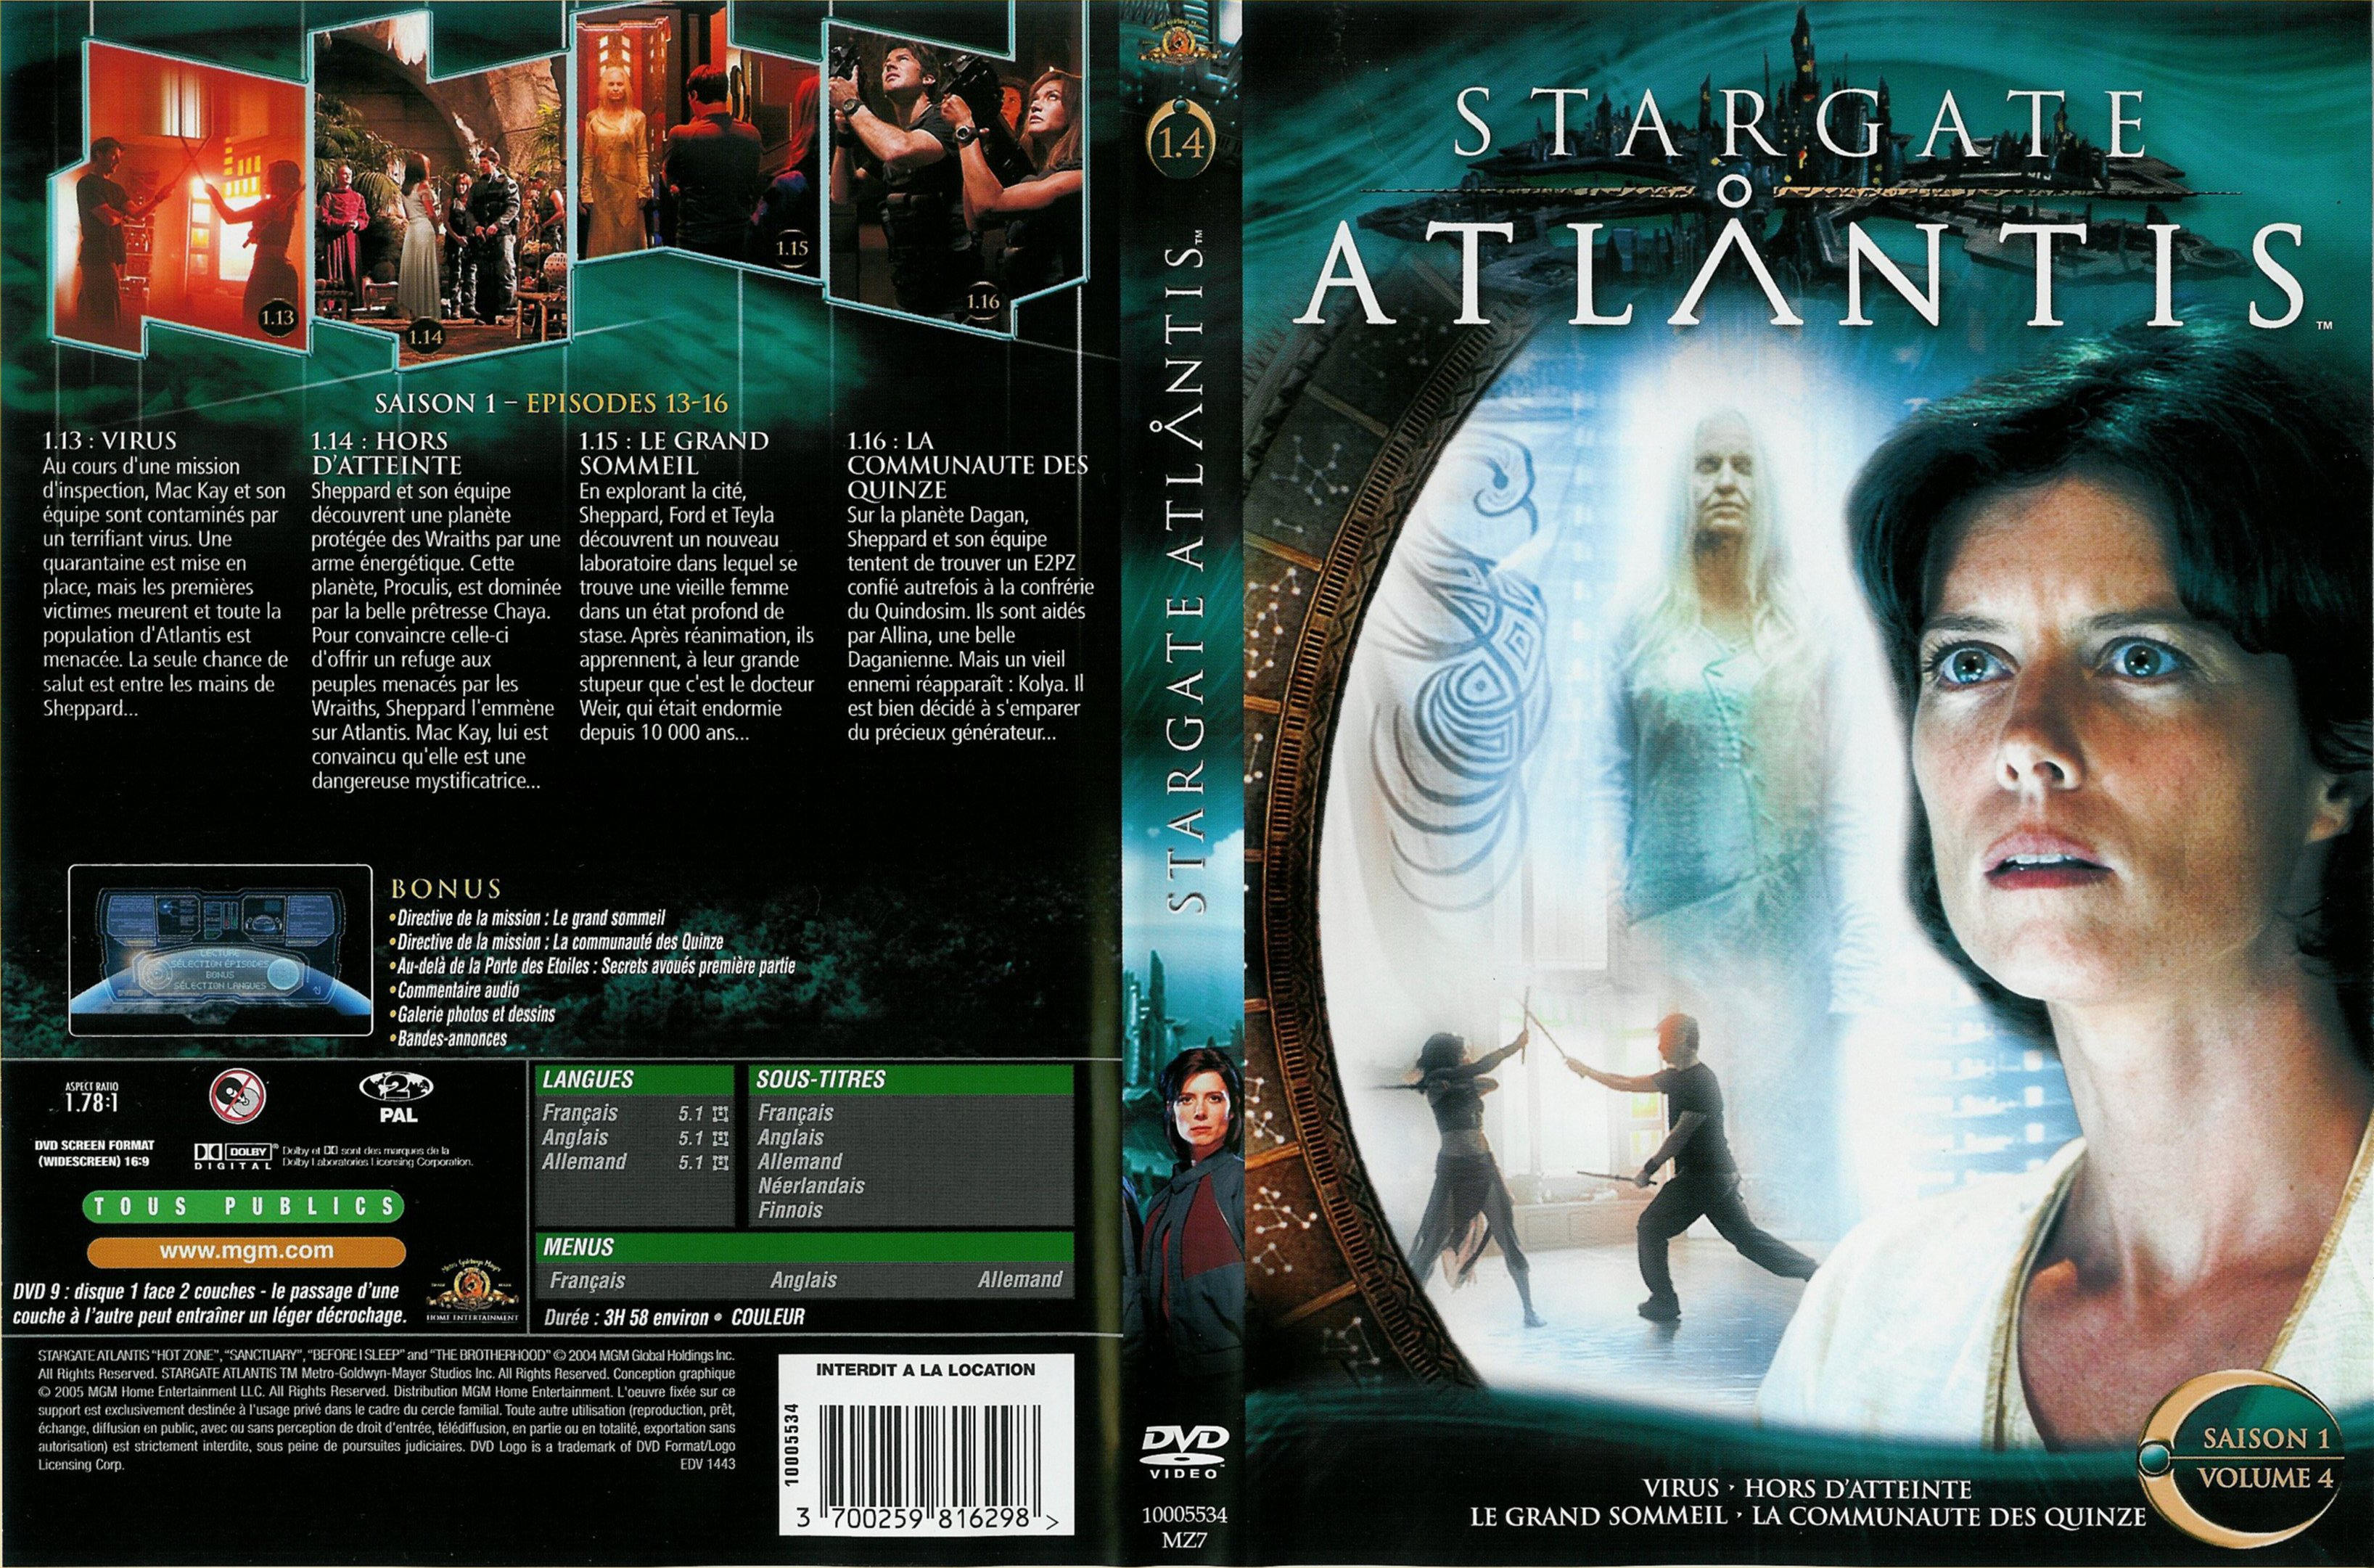 Jaquette DVD Stargate Atlantis saison 1 vol 4